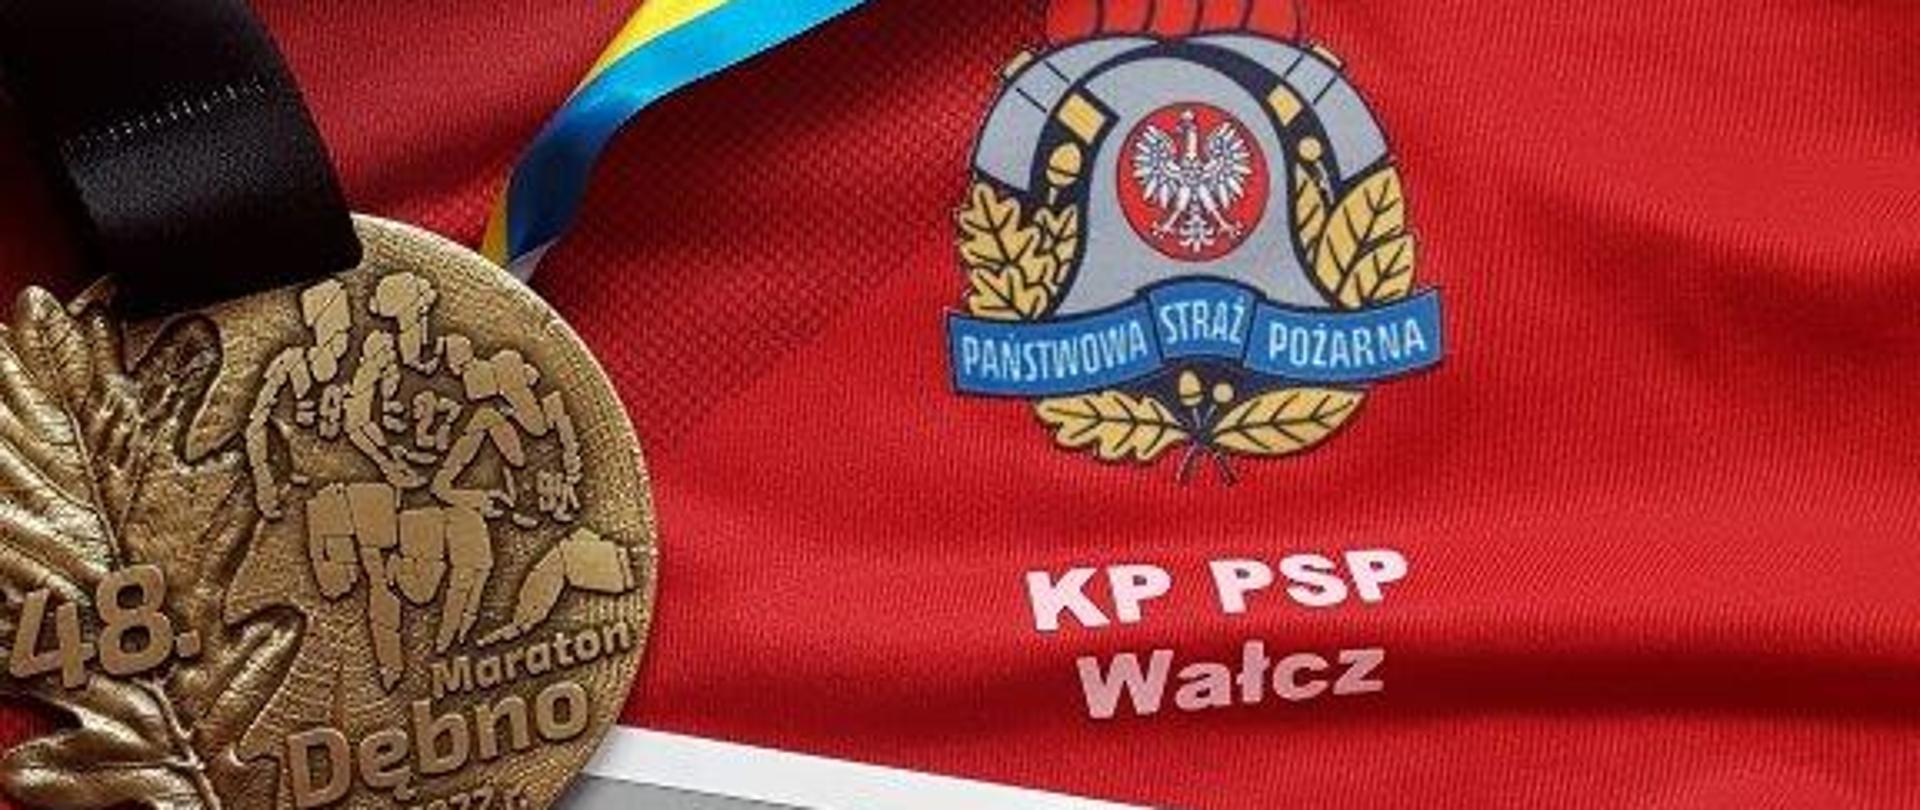 Zdjęcie przedstawia medal, numer startowy Maratonu w Dębnie na tle sportowej koszulki z logo PSP i KP PSP Wałcz